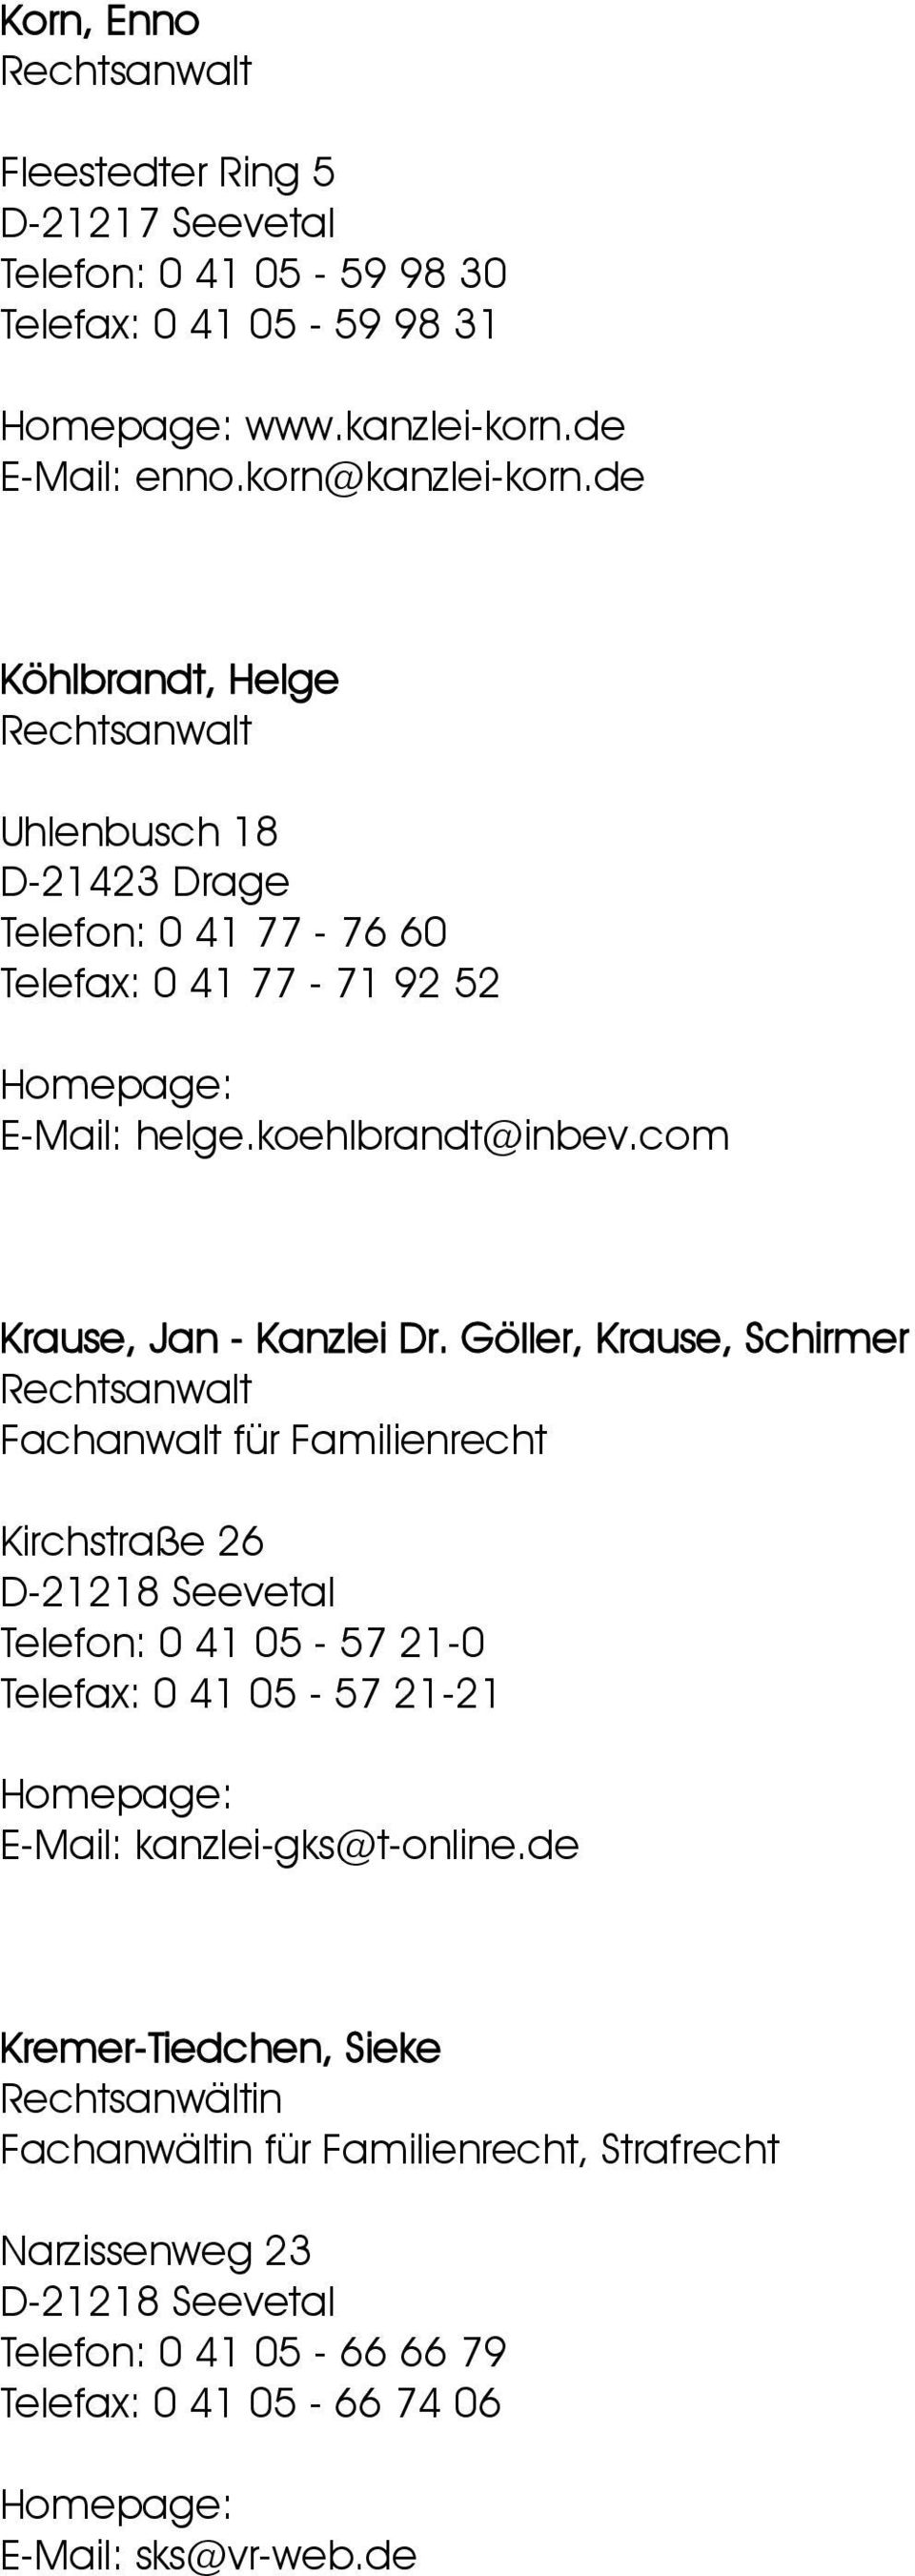 Göller, Krause, Schirmer Fachanwalt für Familienrecht Kirchstraße 26 D-21218 Seevetal Telefon: 0 41 05-57 21-0 Telefax: 0 41 05-57 21-21 E-Mail: